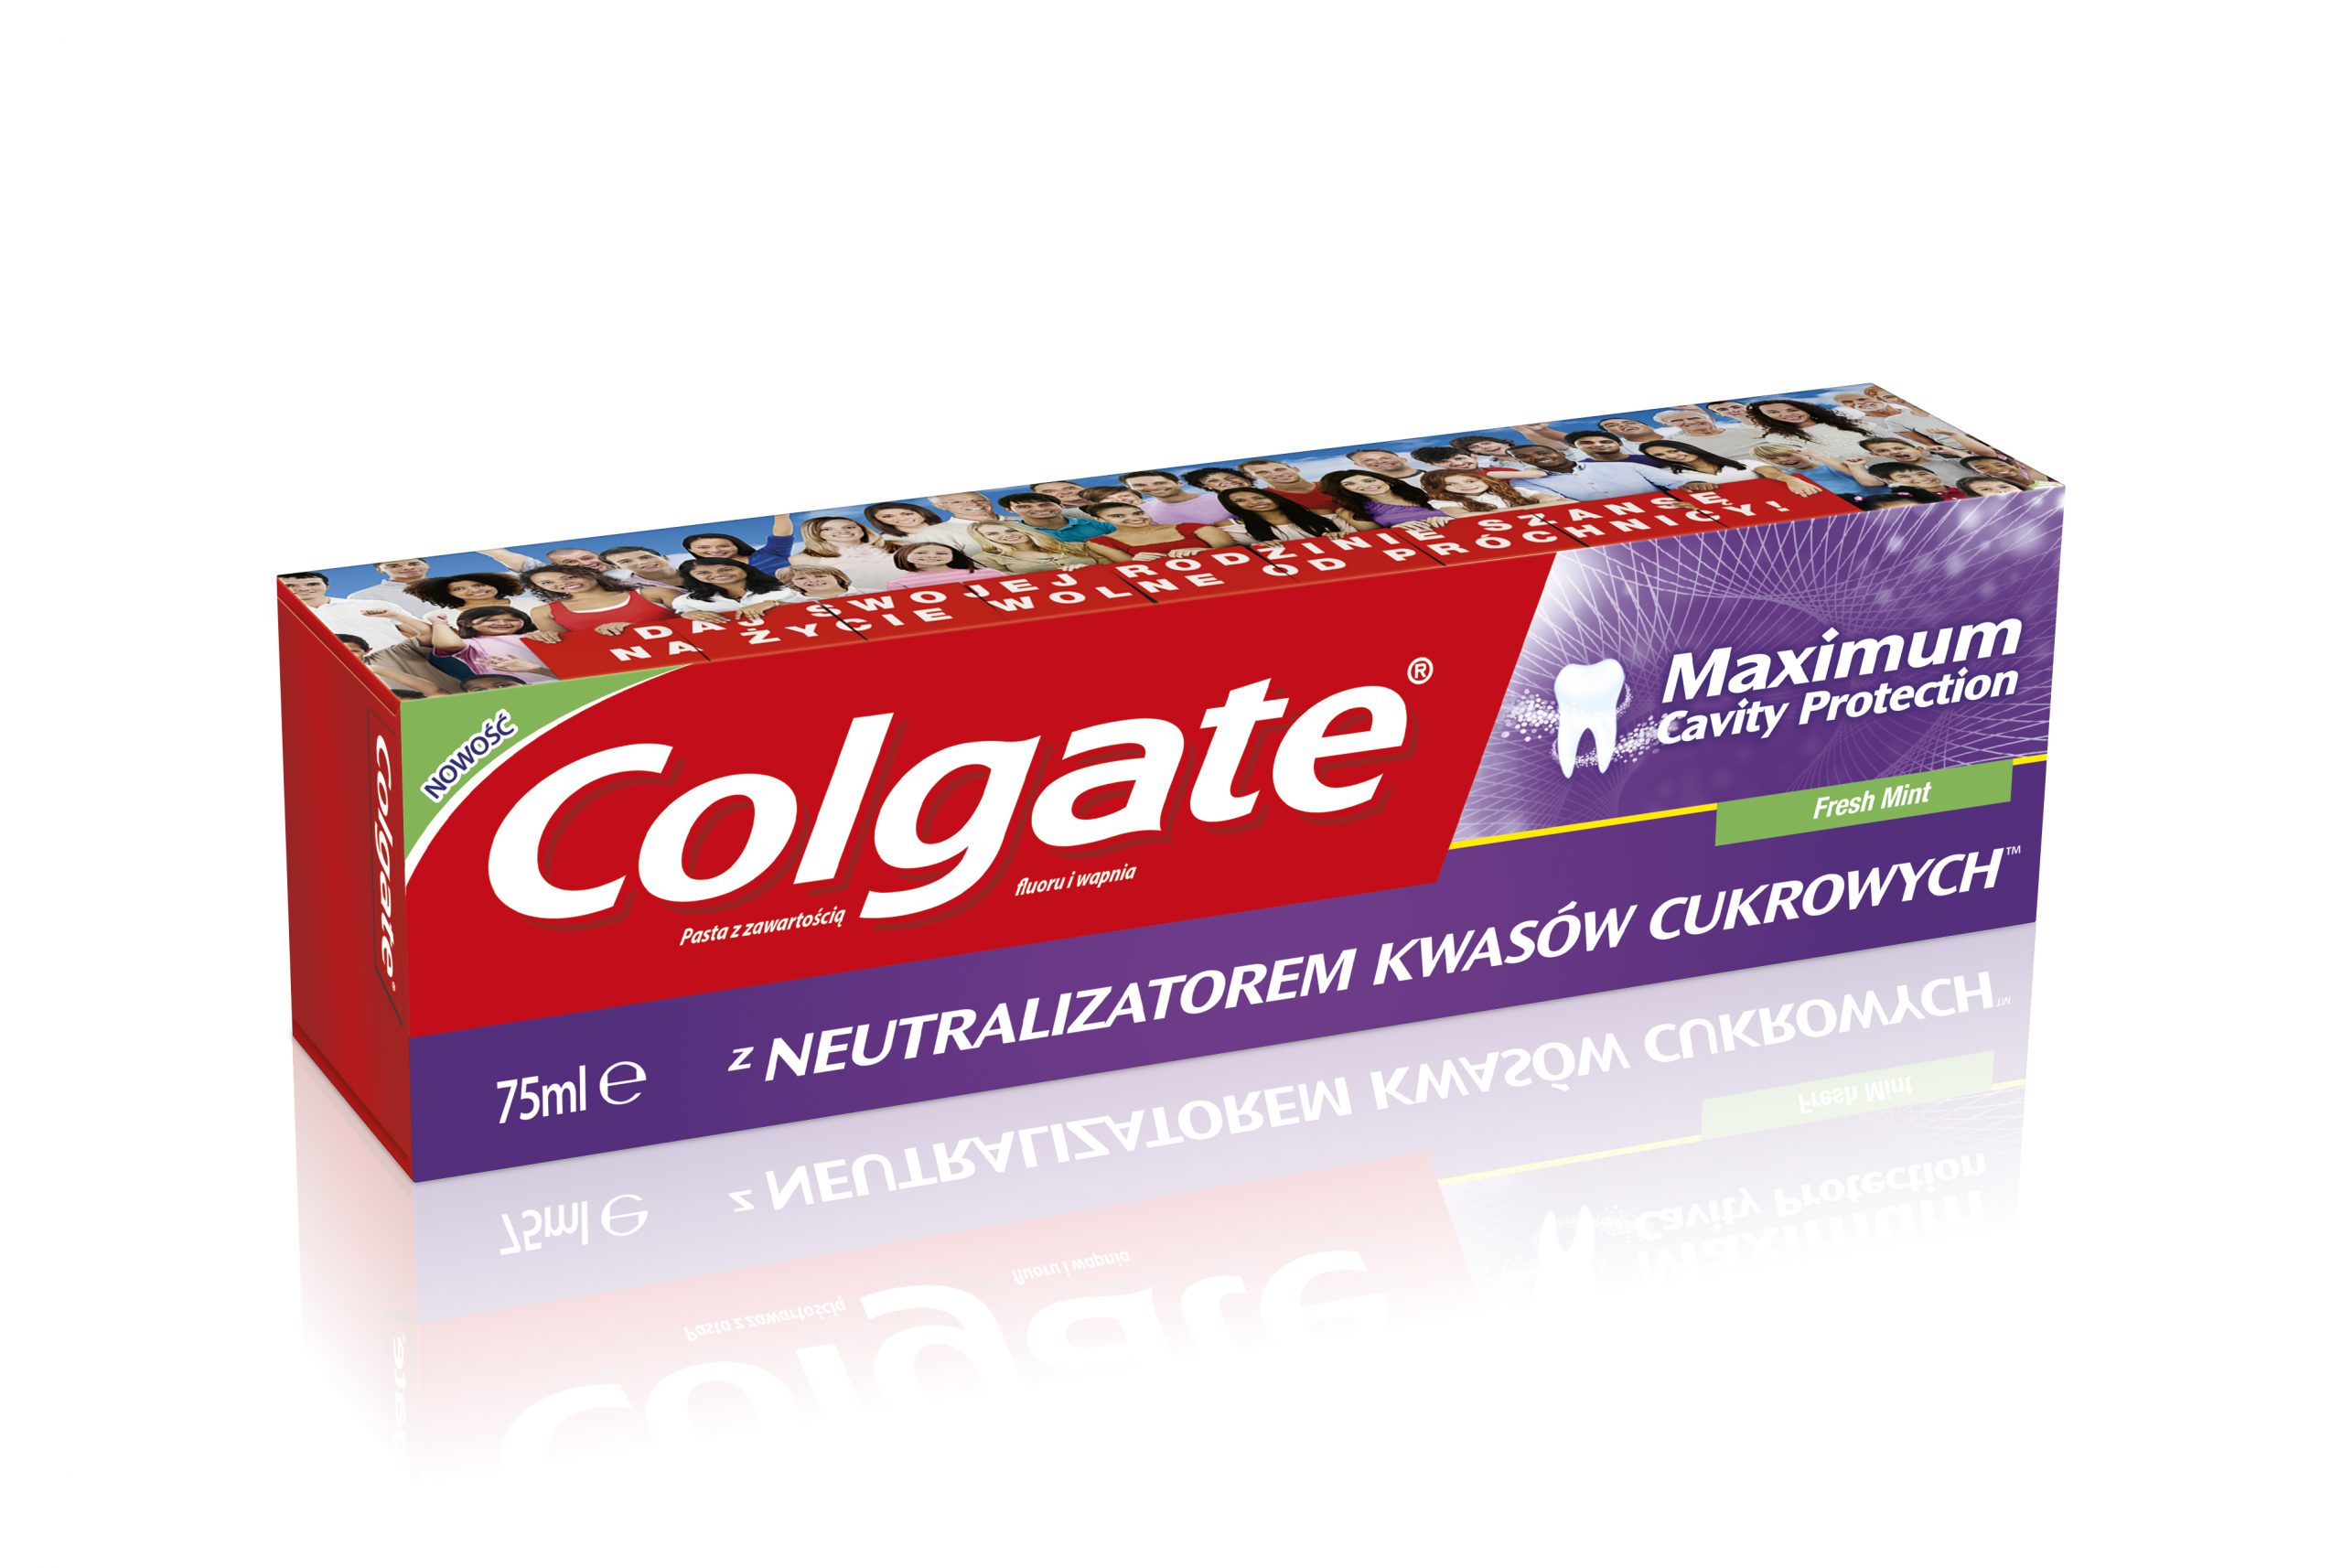 Colgate® Maximum Cavity Protection z Neutralizatorem Kwasów CukrowychTM